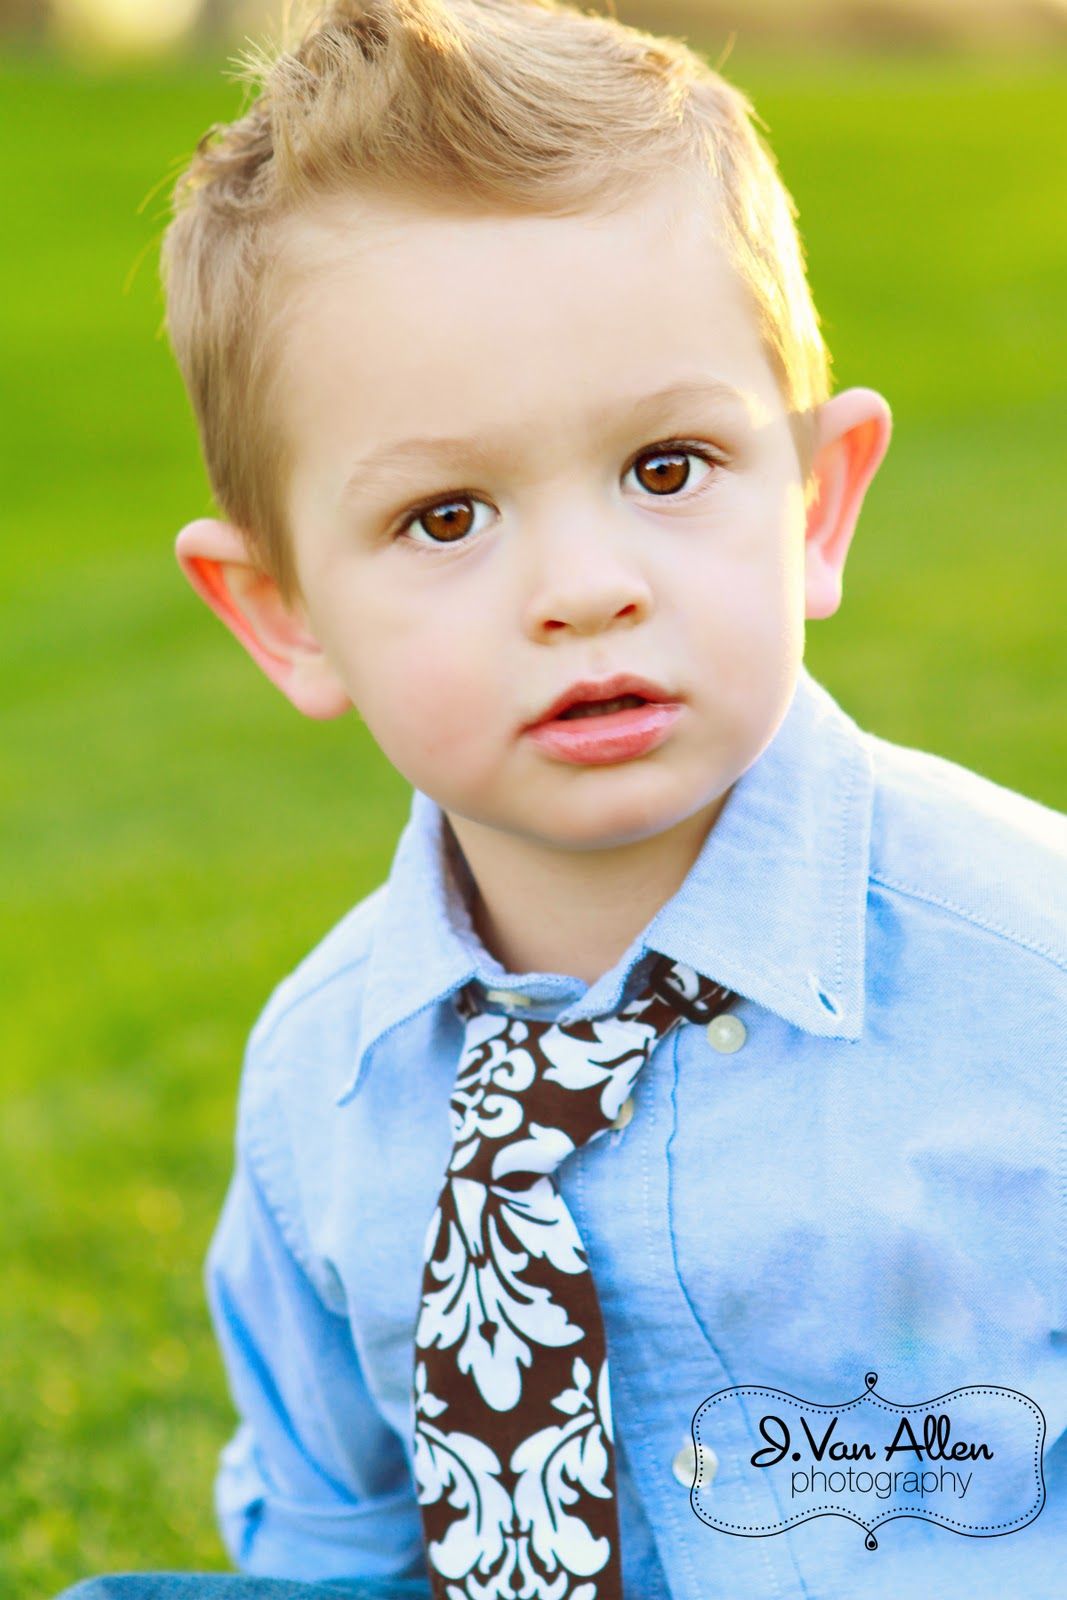 J. Van Allen Photography. Cute baby boy picture, Cute baby wallpaper, Cute boy wallpaper